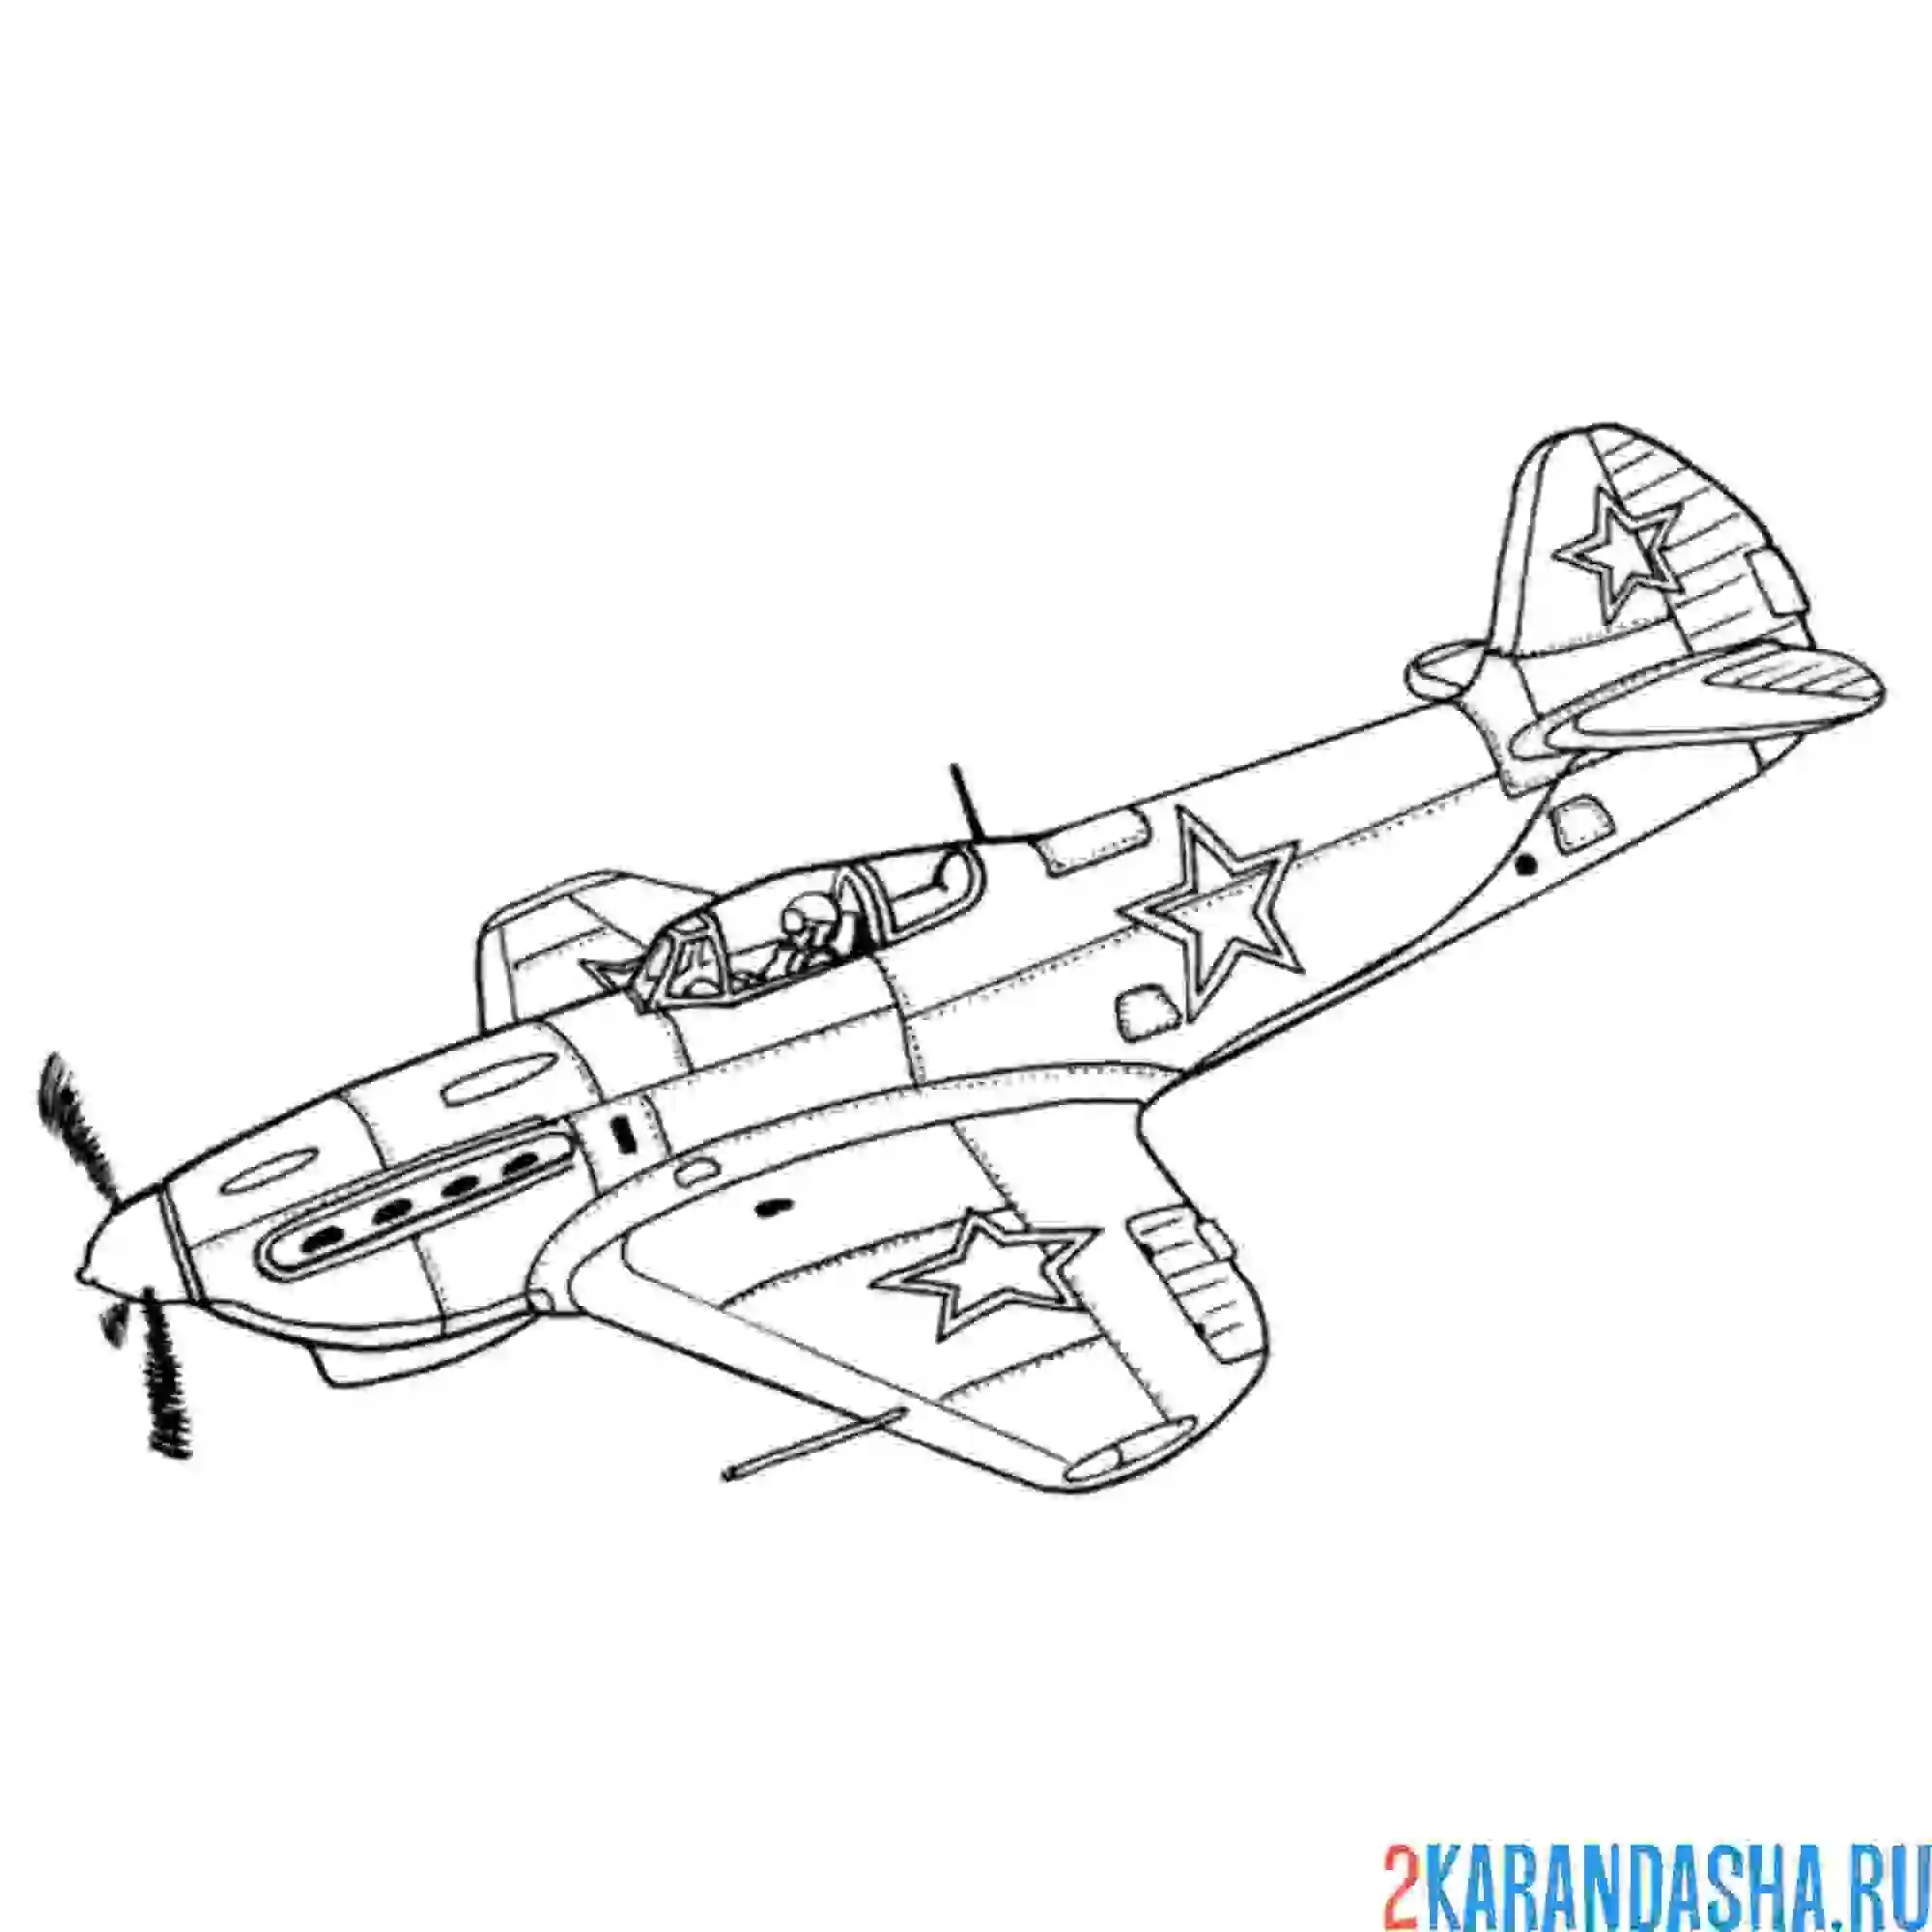 Раскраска як-9 советский одномоторный самолёт истребитель-бомбардировщик великой отечественной войны